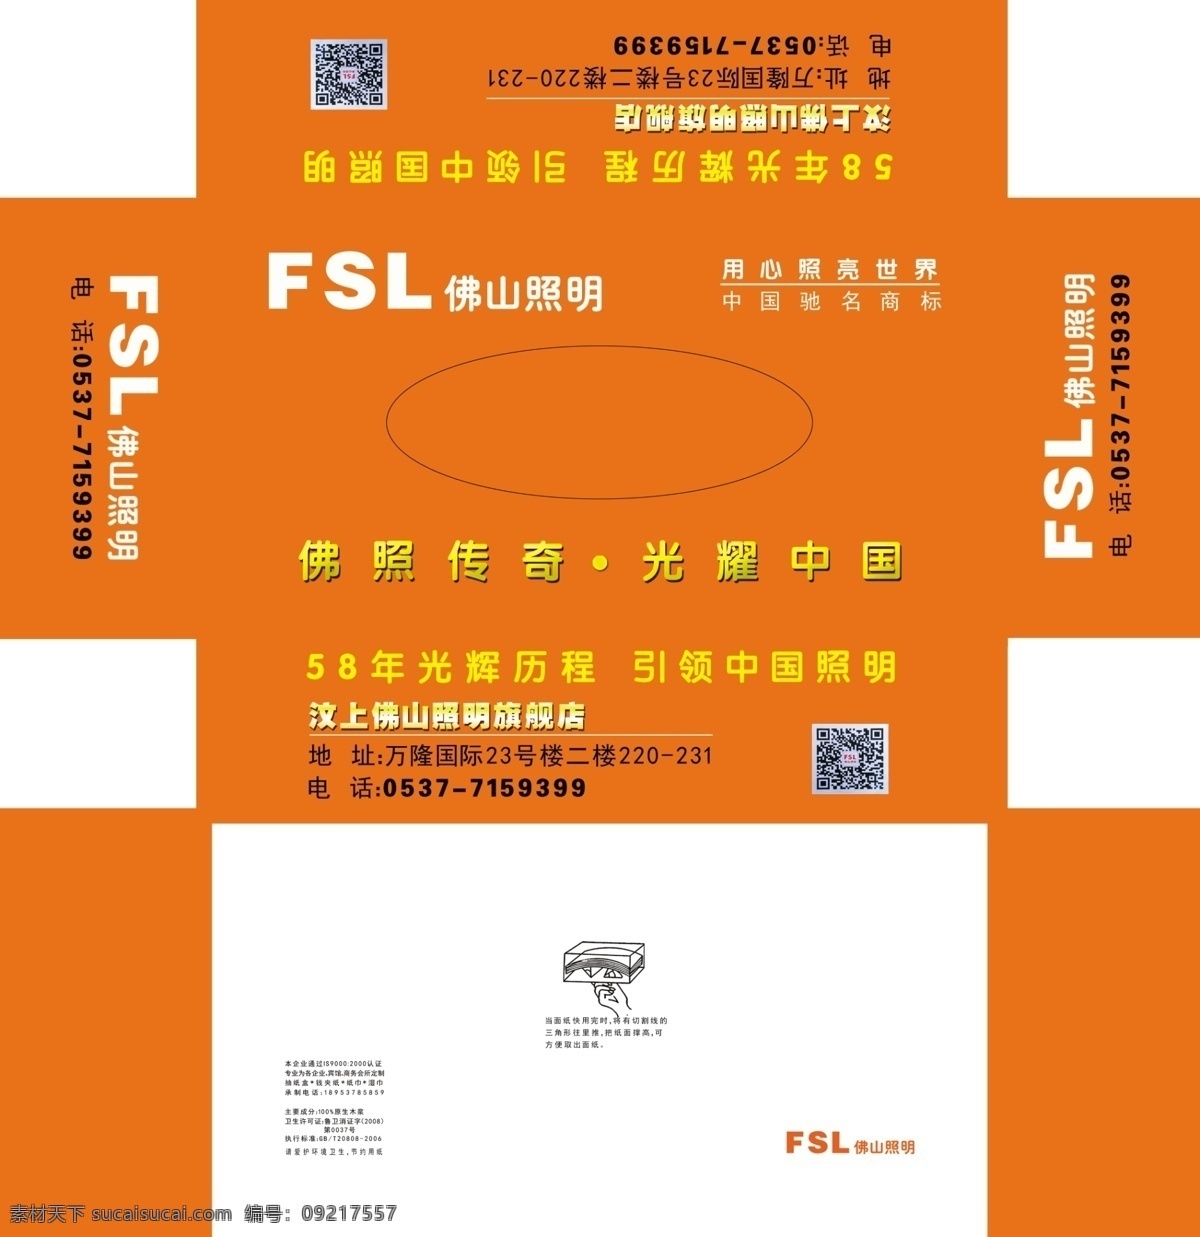 橙色抽纸 佛山照明 抽纸盒 橙色 抽纸 促销 活动 包装设计